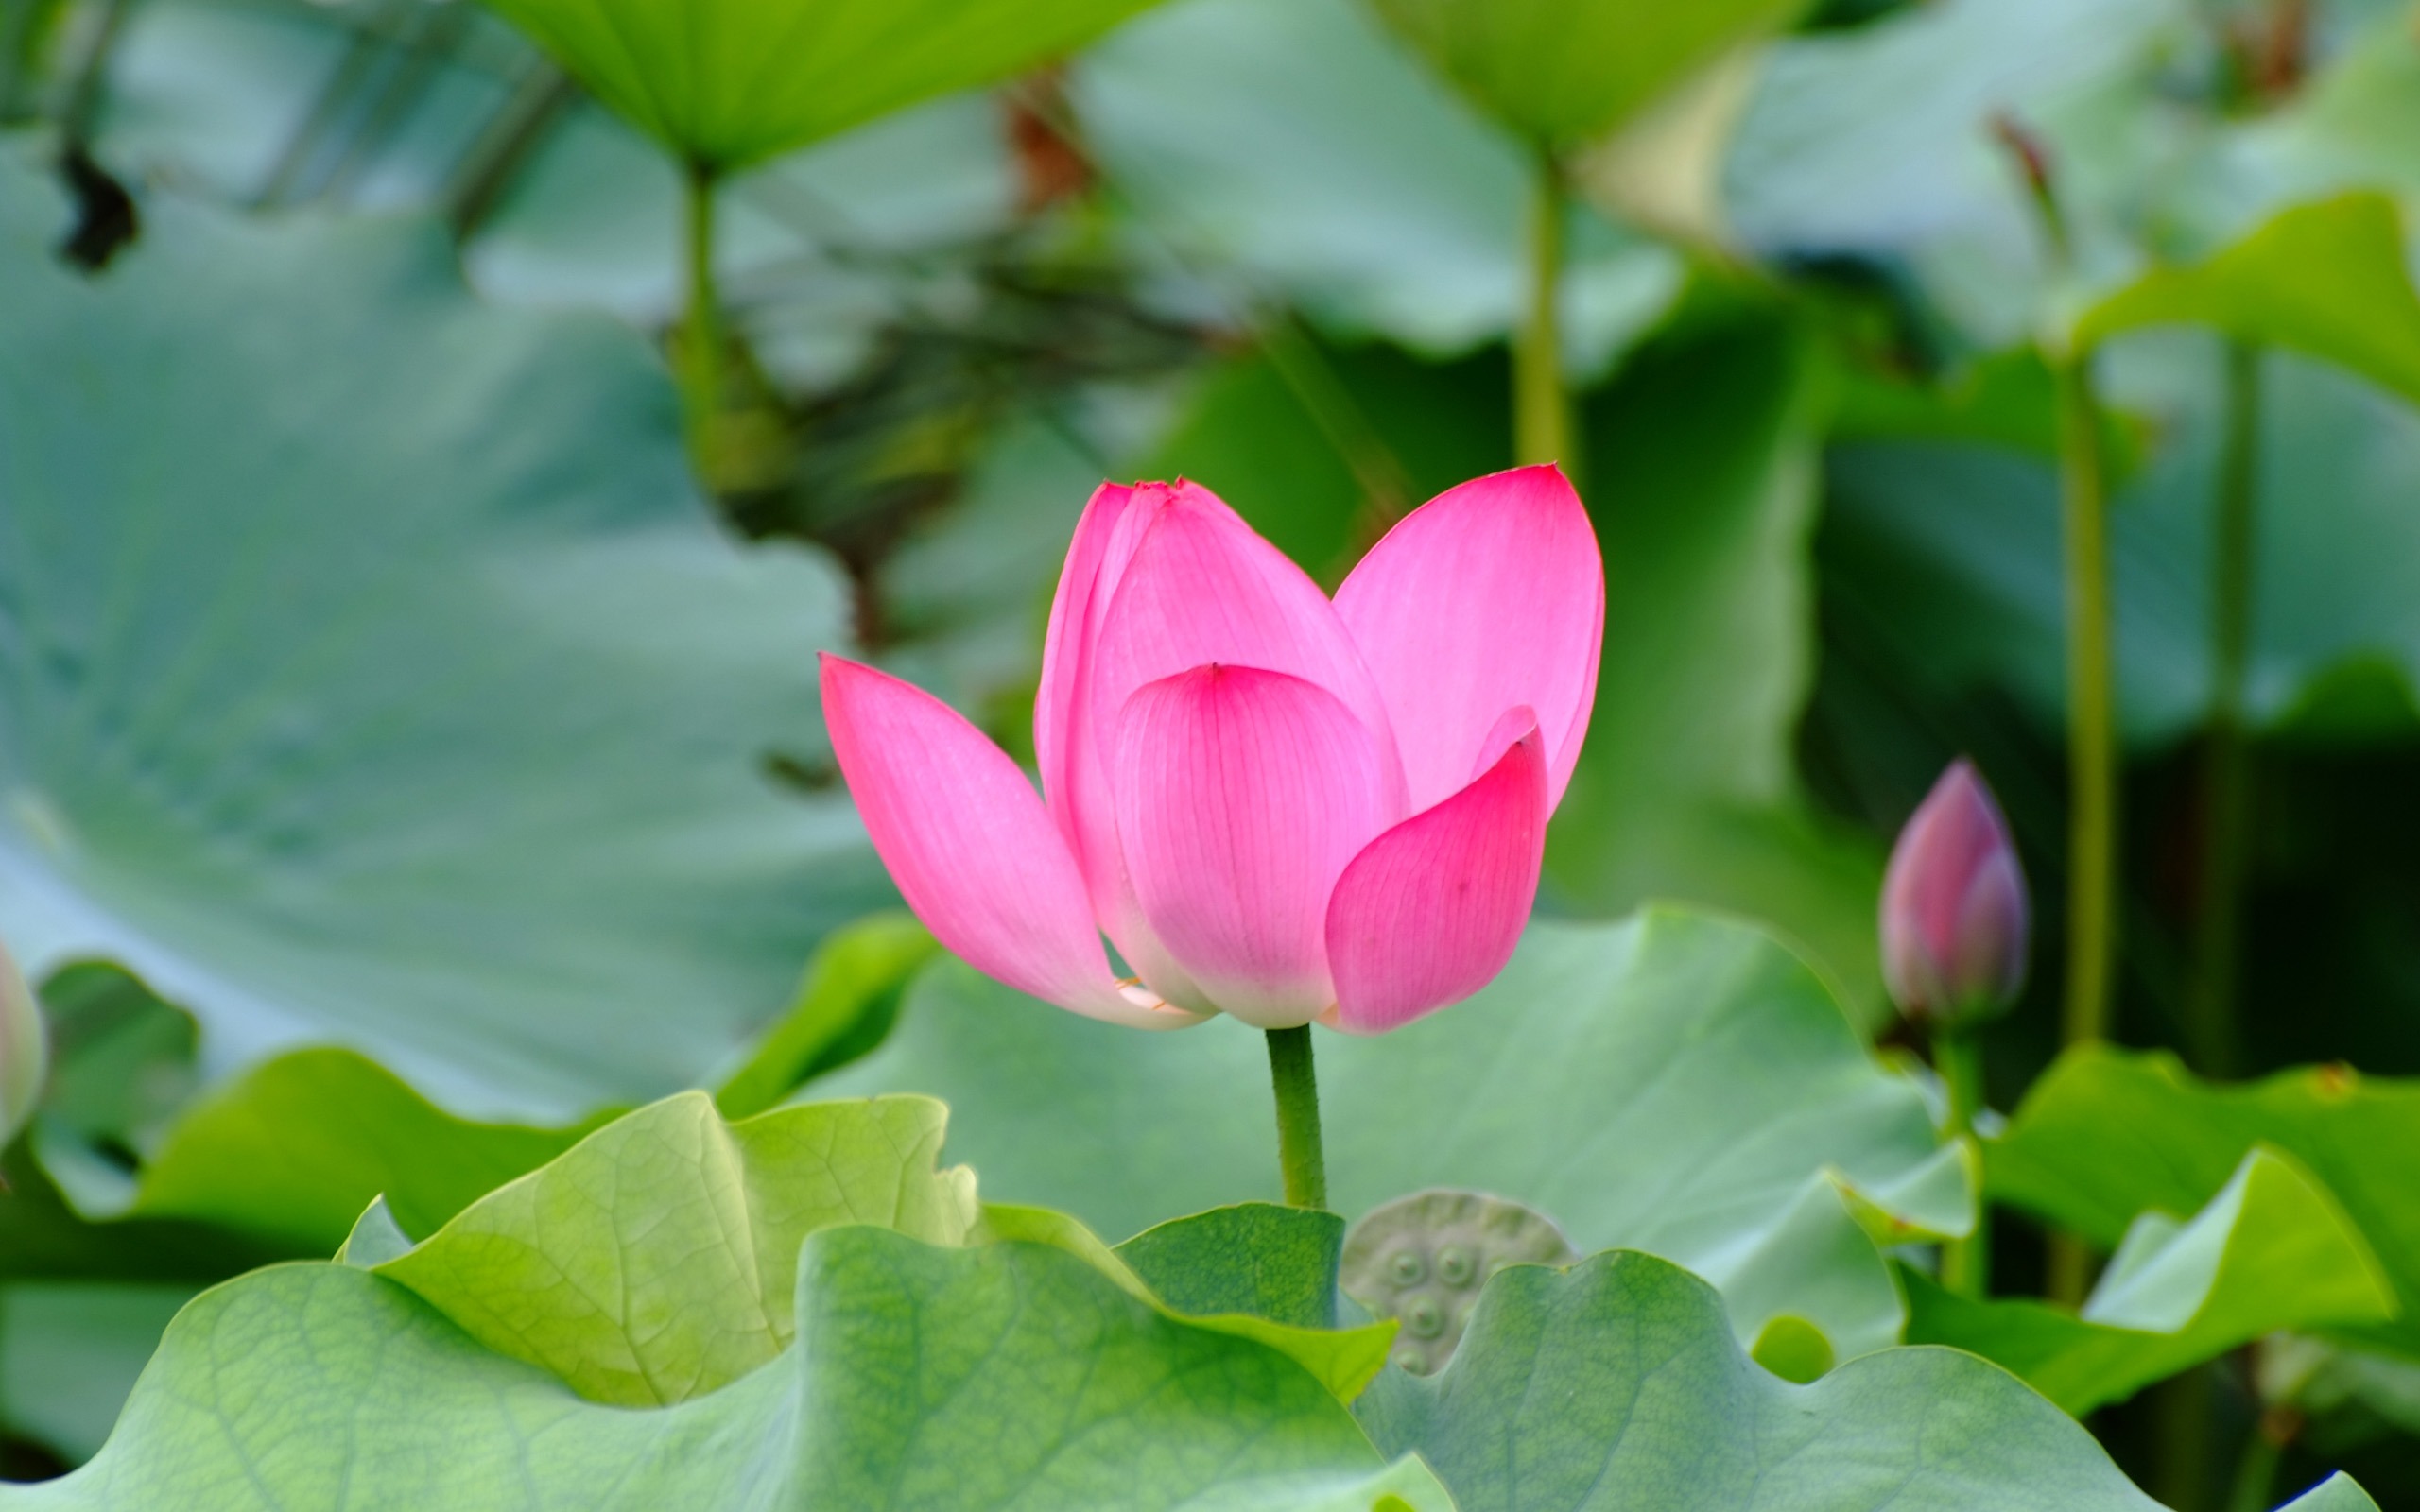 Rose Garden of the Lotus (rebar works) #1 - 2560x1600